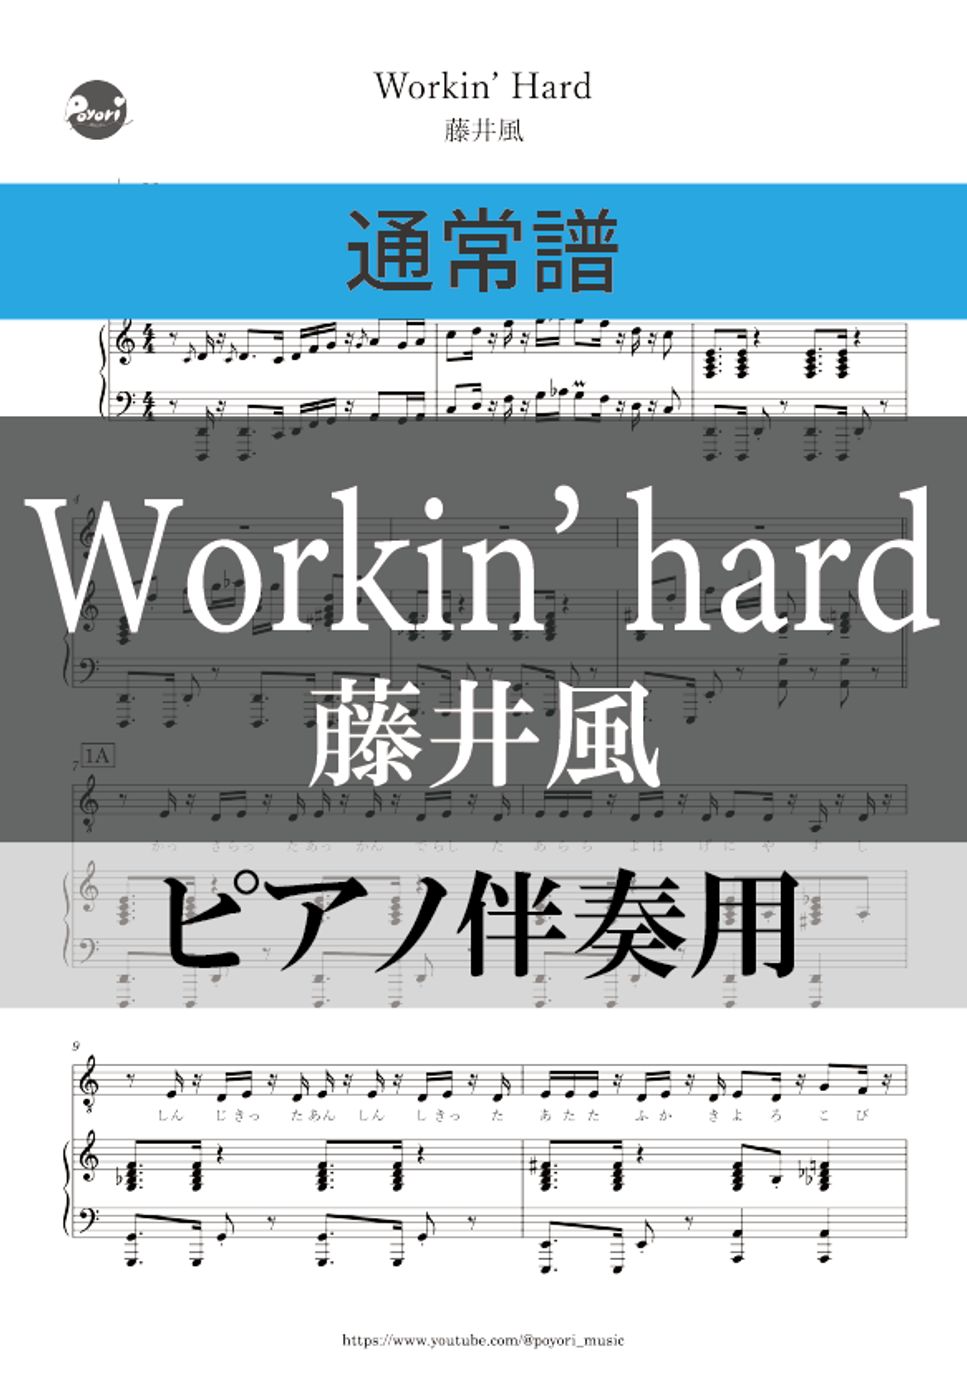 藤井風 - Workin’ Hard (ピアノ伴奏) by ぽより